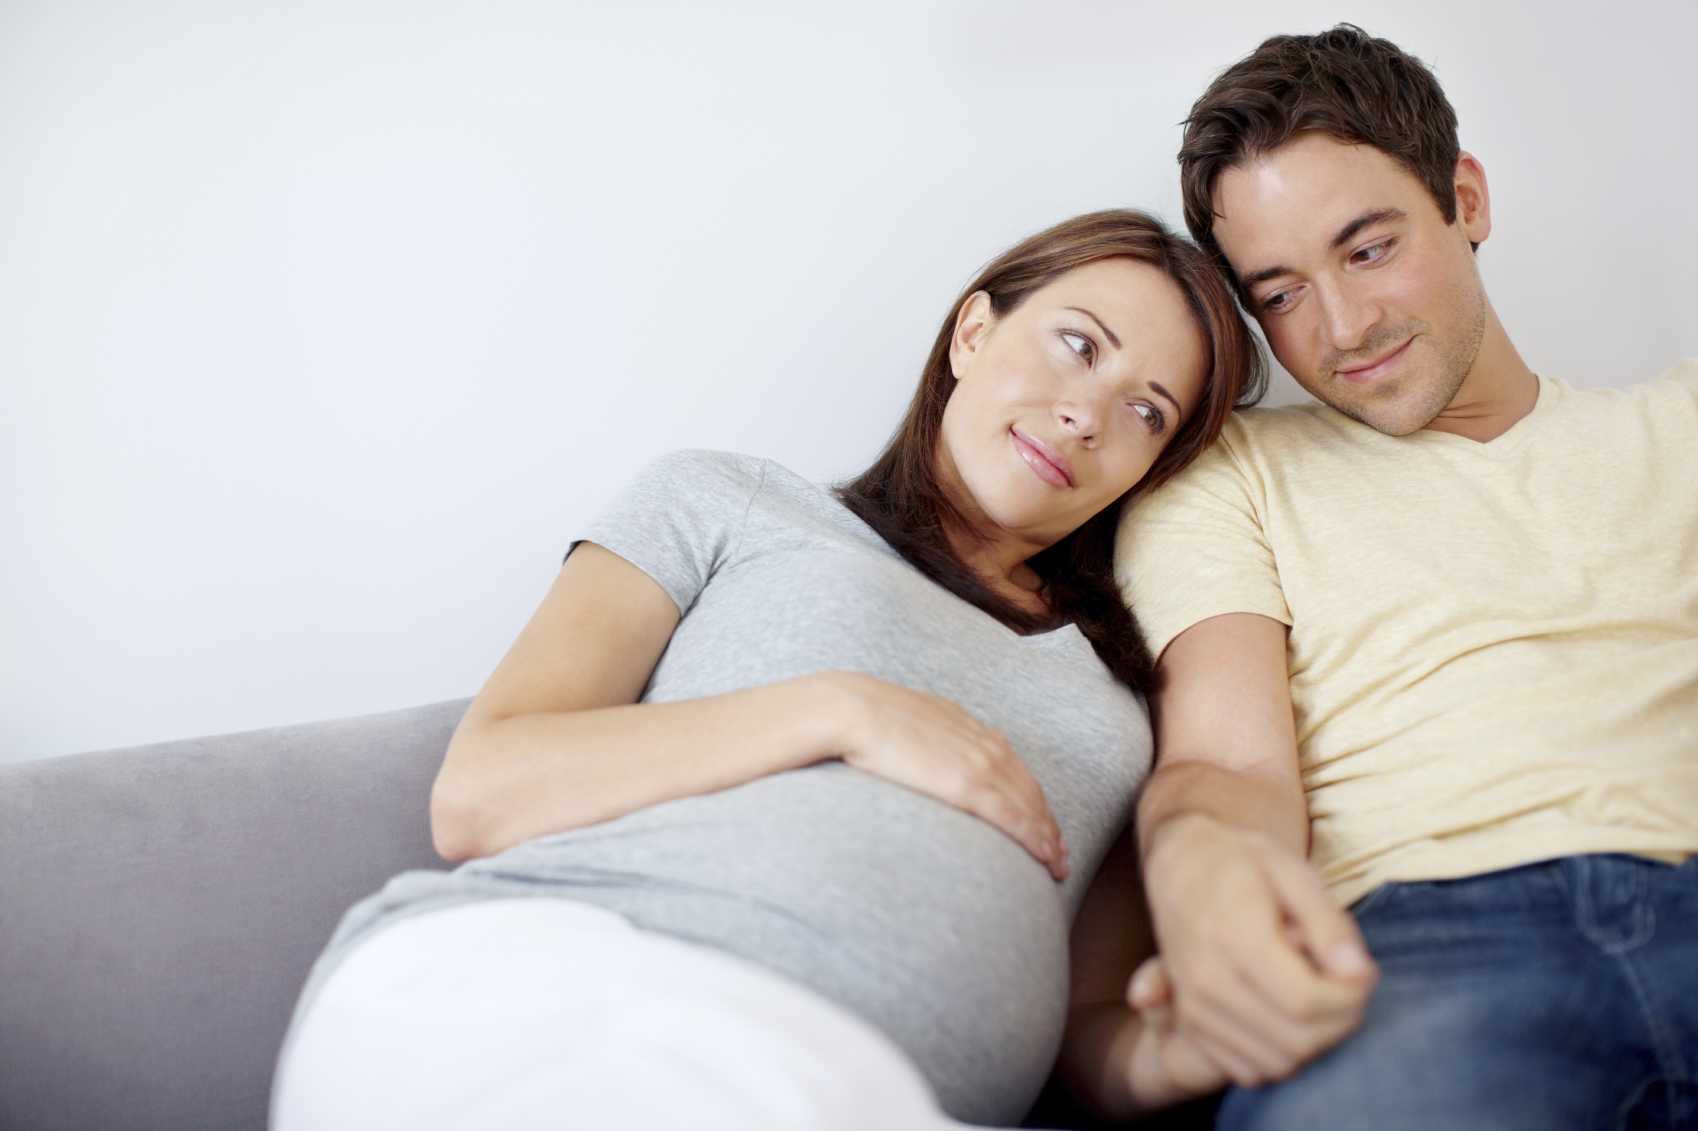 10 мифов о подготовке к беременности и их опровержение | милосердие.ru